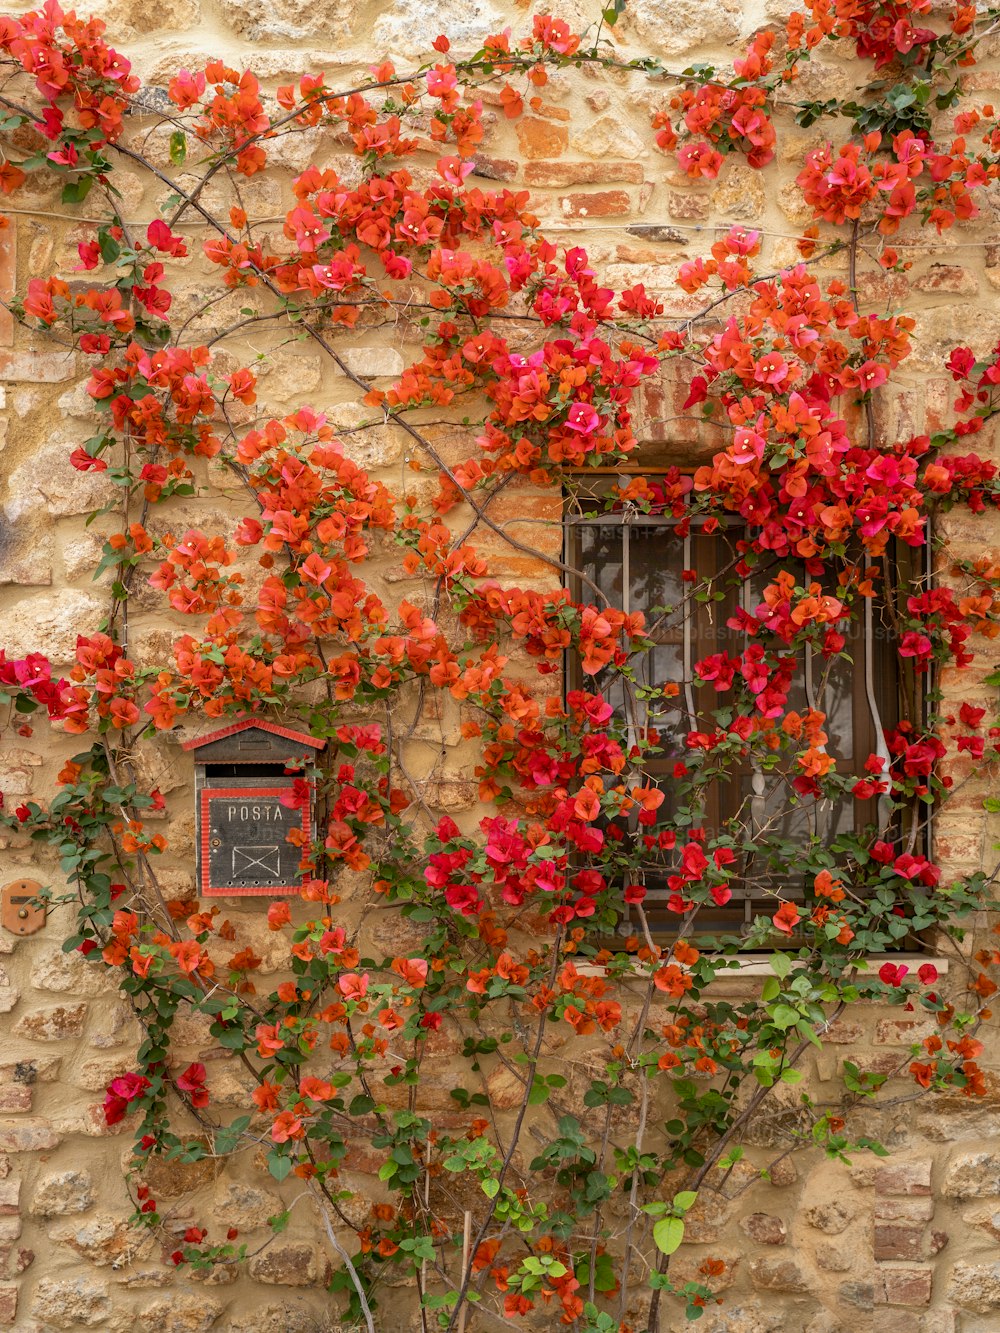 창문 옆에 붉은 꽃으로 덮인 벽돌 벽